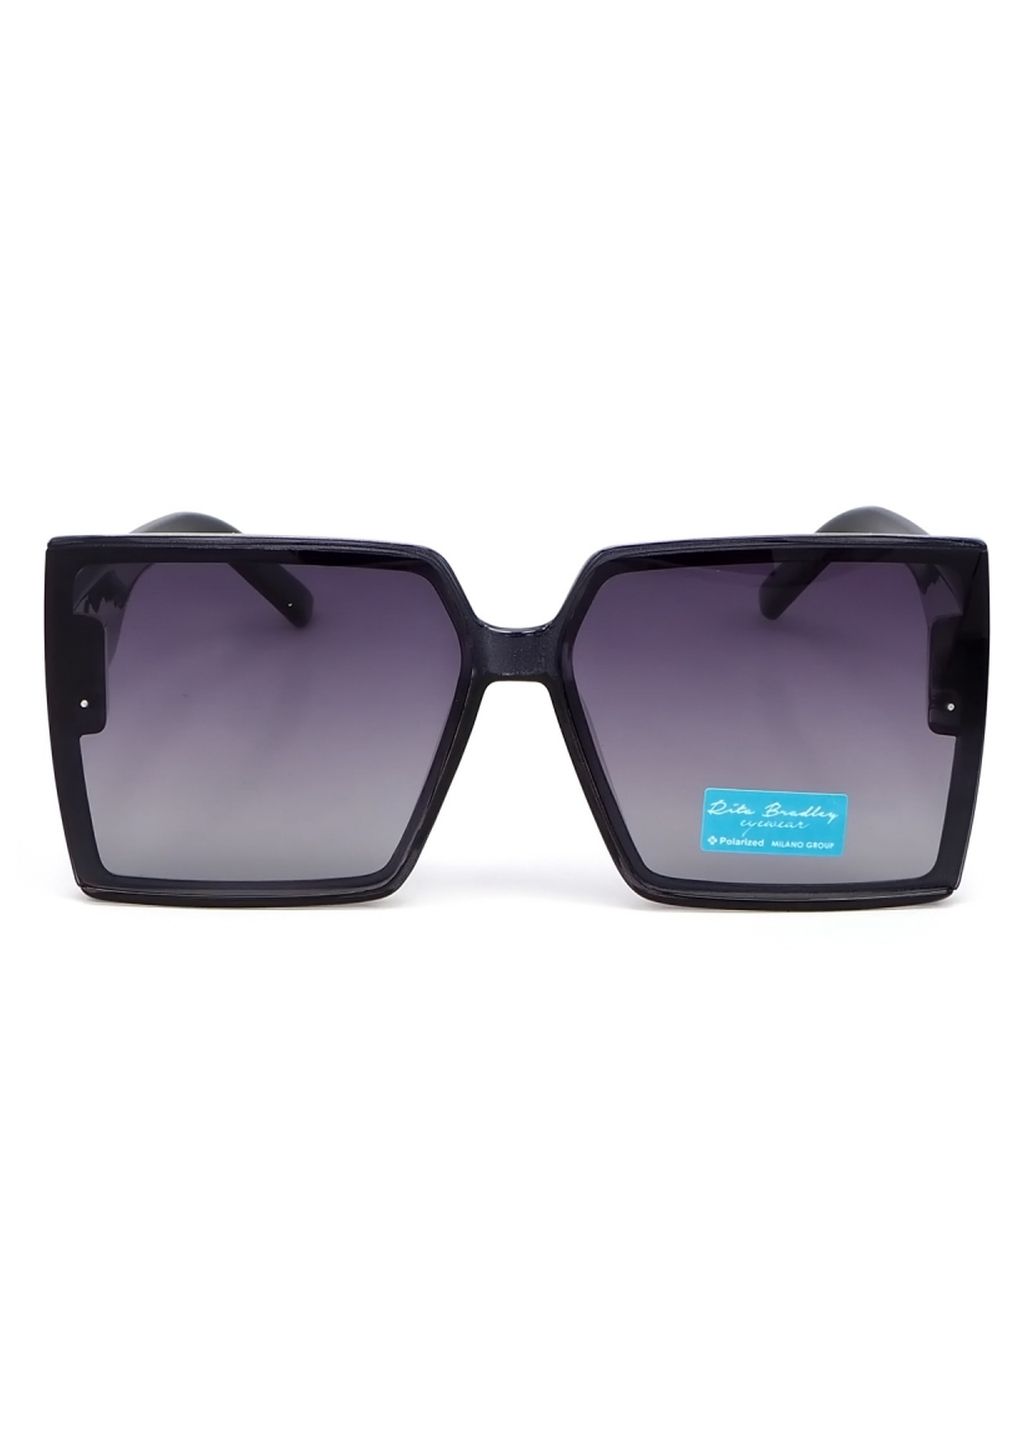 Купить Женские солнцезащитные очки Rita Bradley с поляризацией RB724 112044 в интернет-магазине